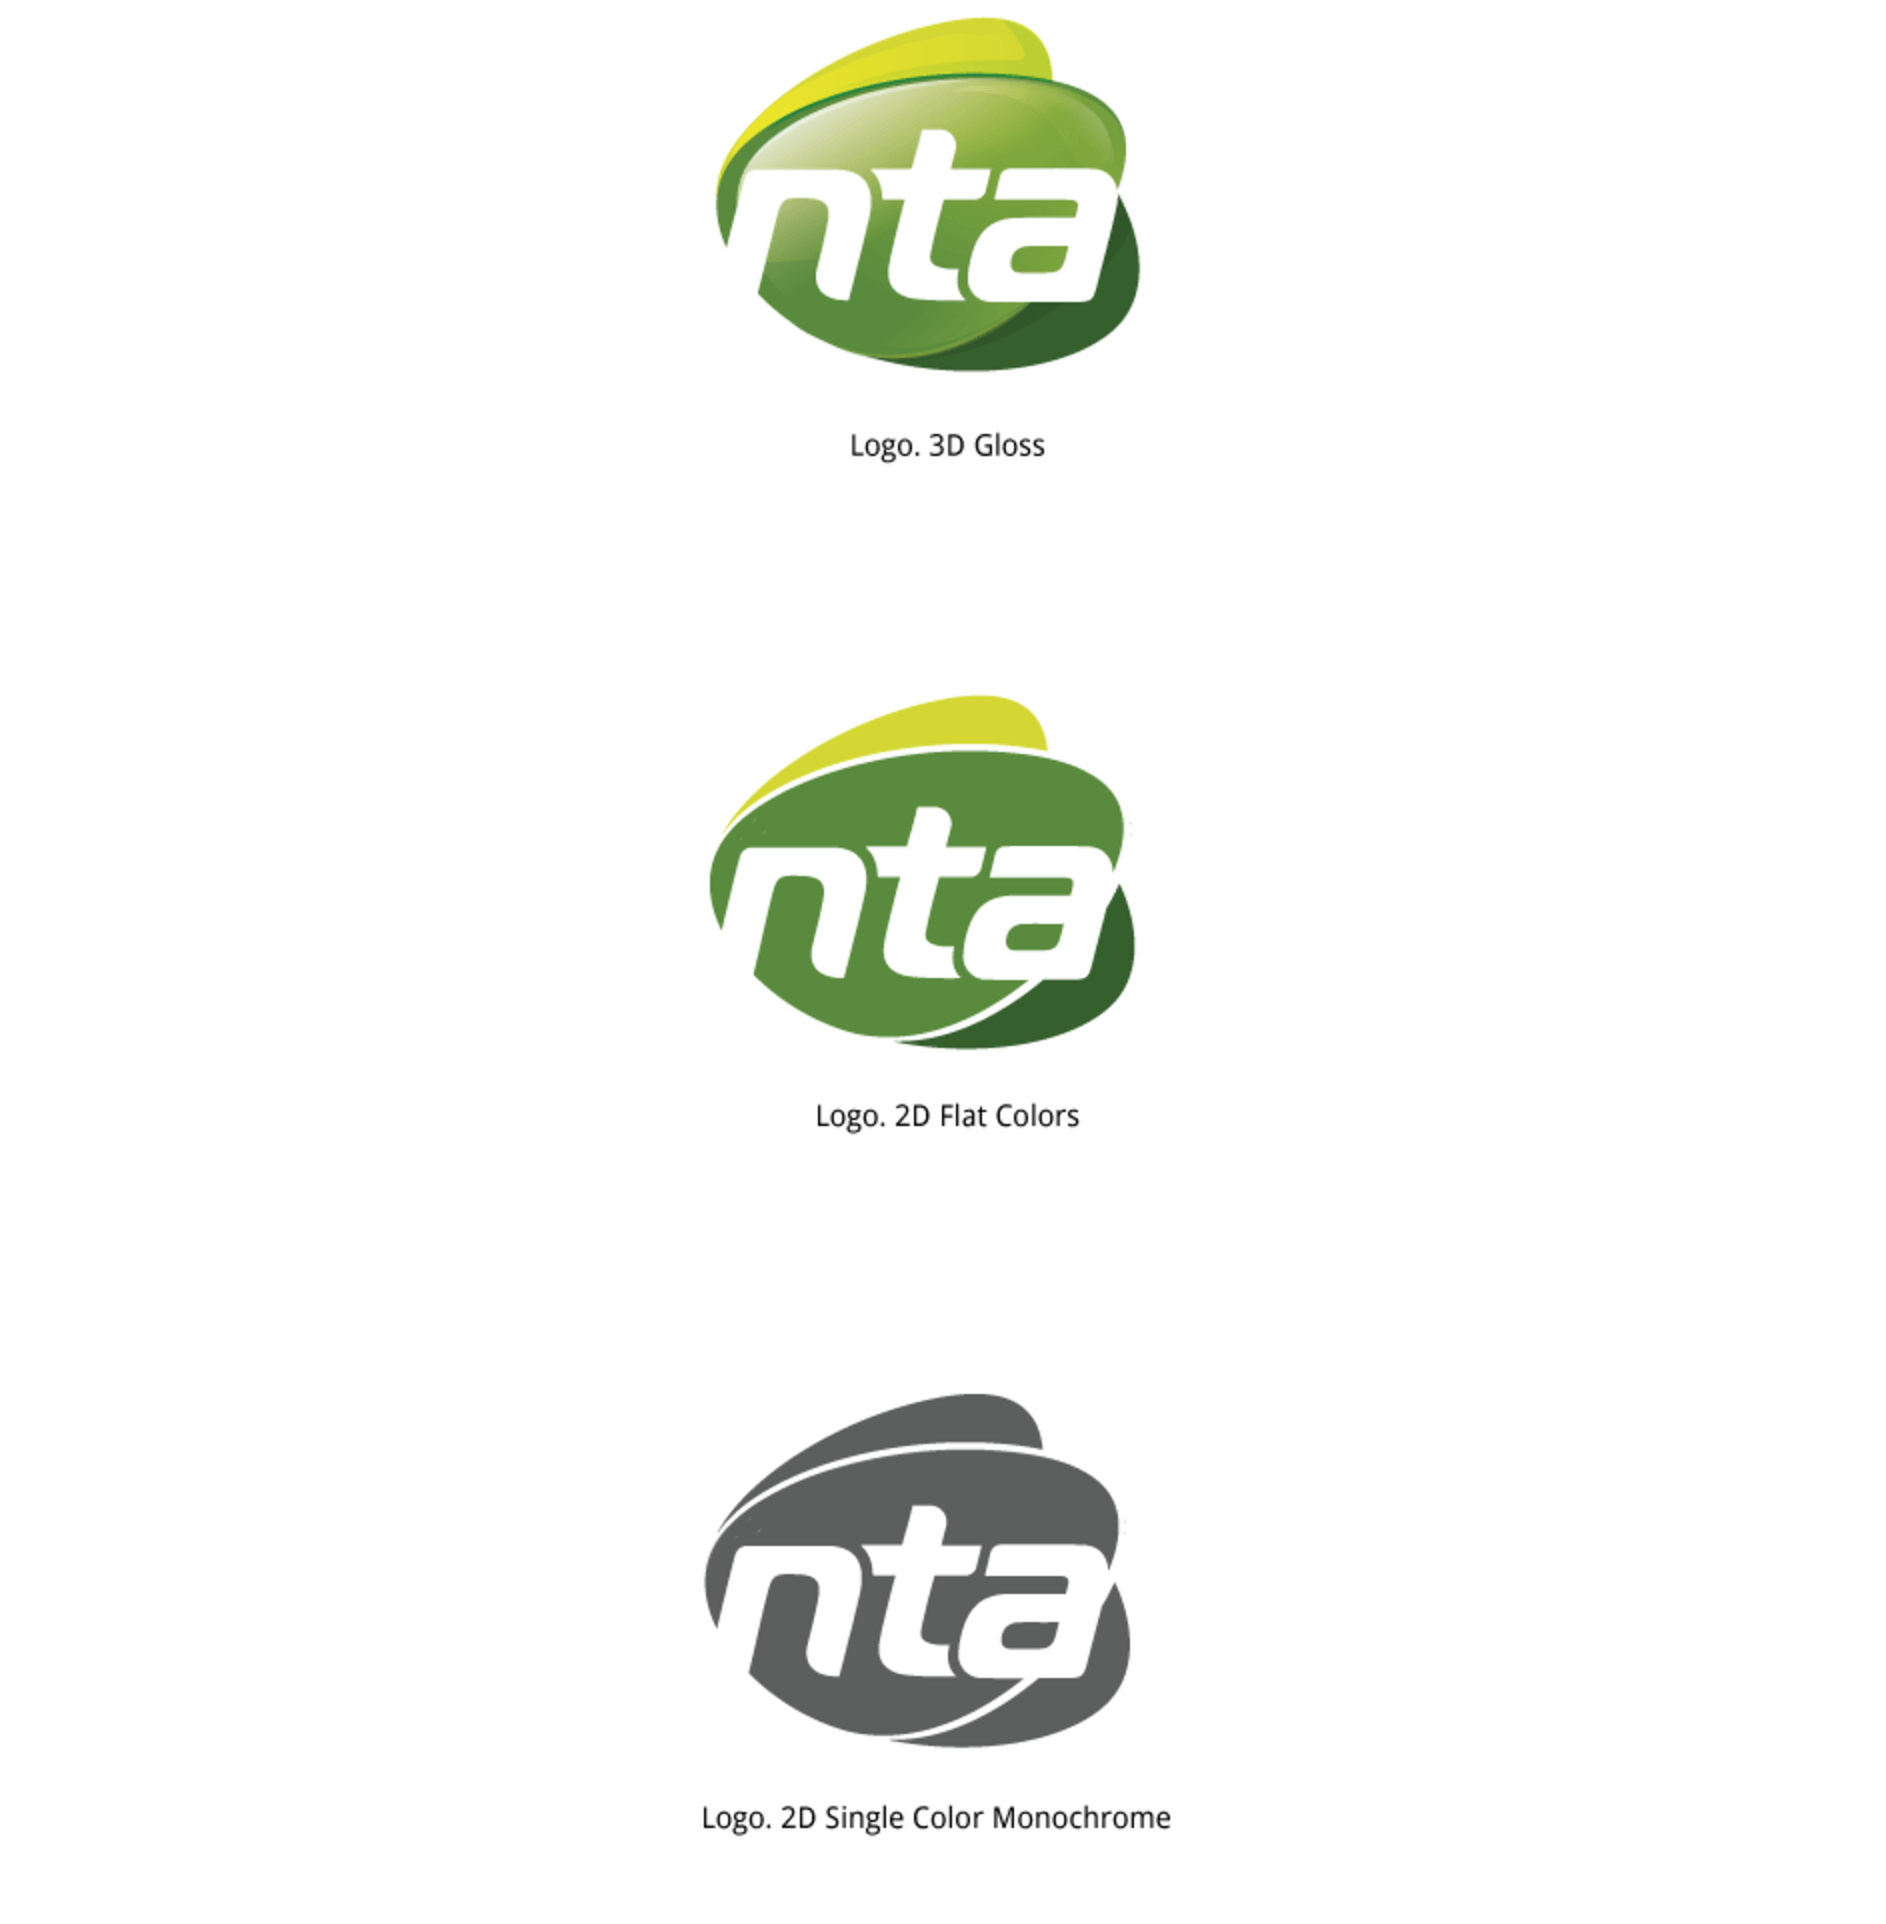 NTA Logo - The Rebranding of NTA